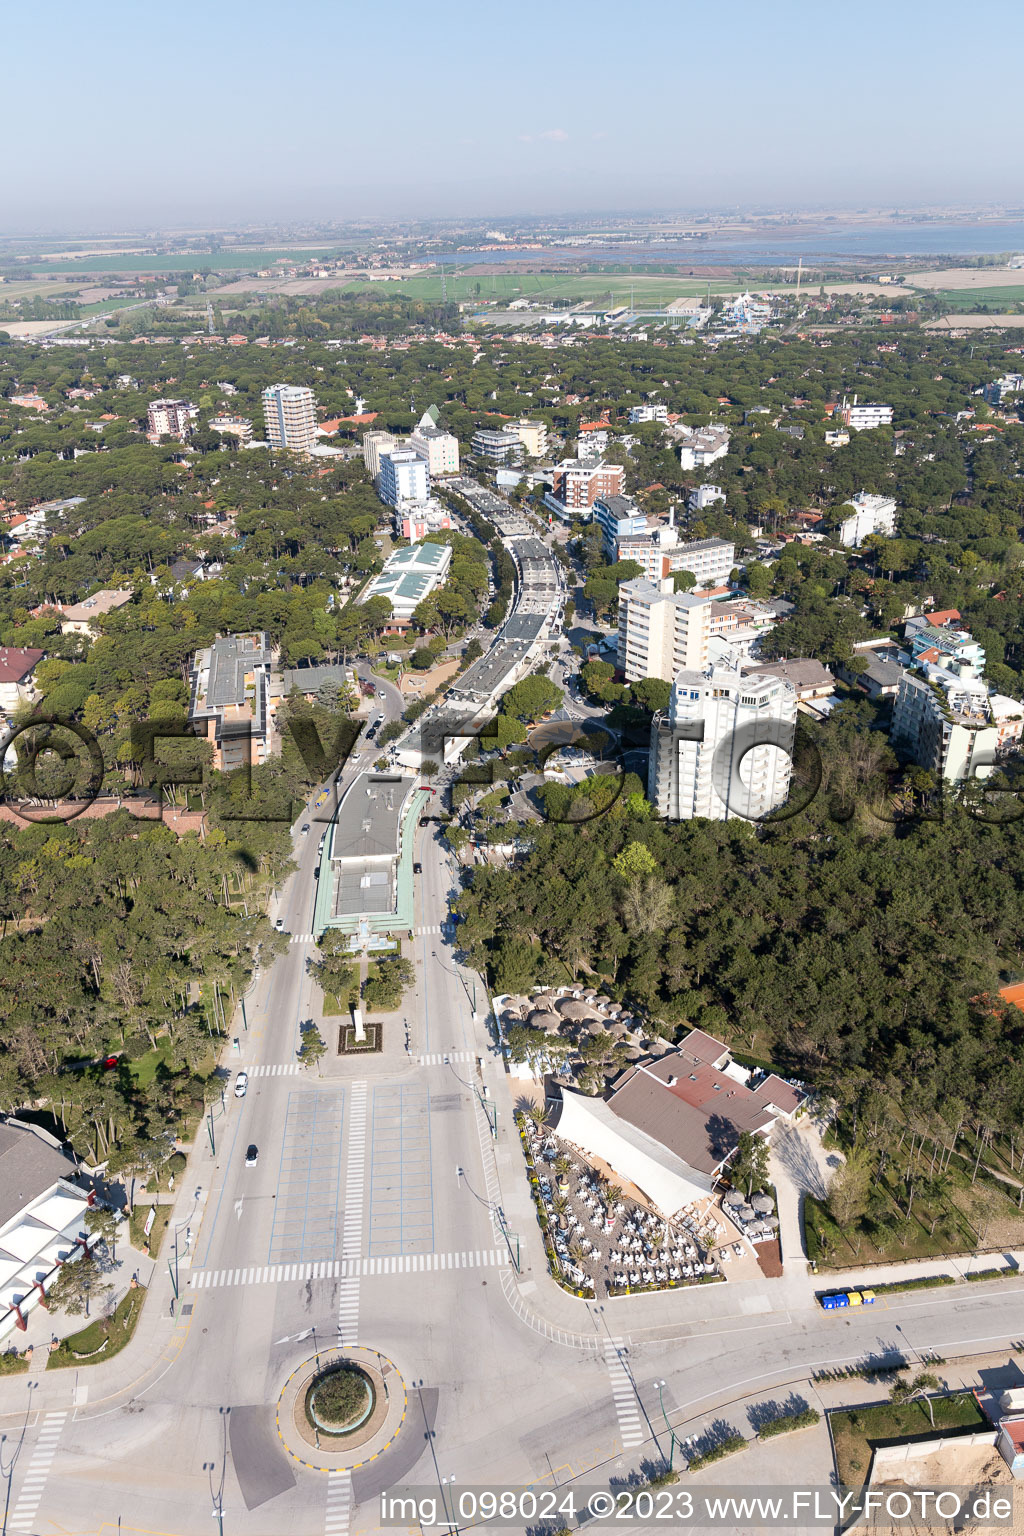 Luftbild von Lignano Pineta im Bundesland Friaul-Julisch Venetien, Italien